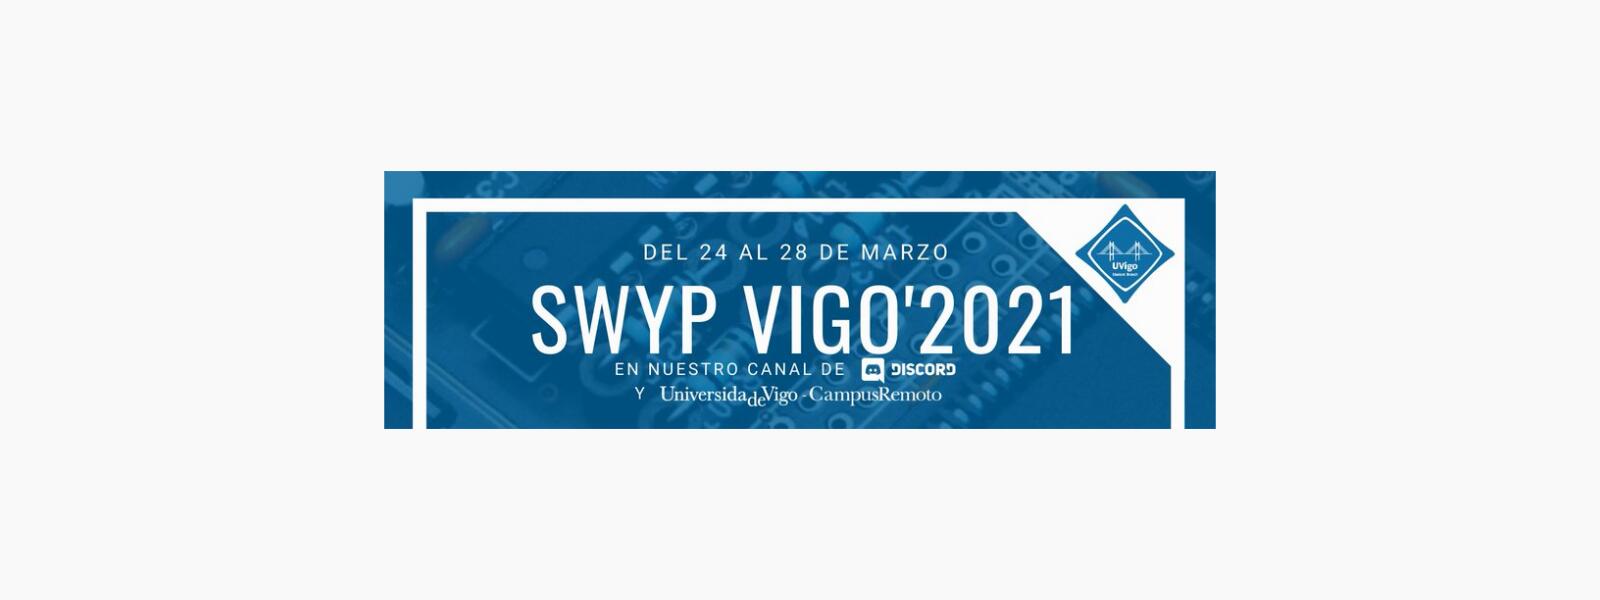 Visión e experiencias en enxeñería con software libre no SWYP 2021 VIGO